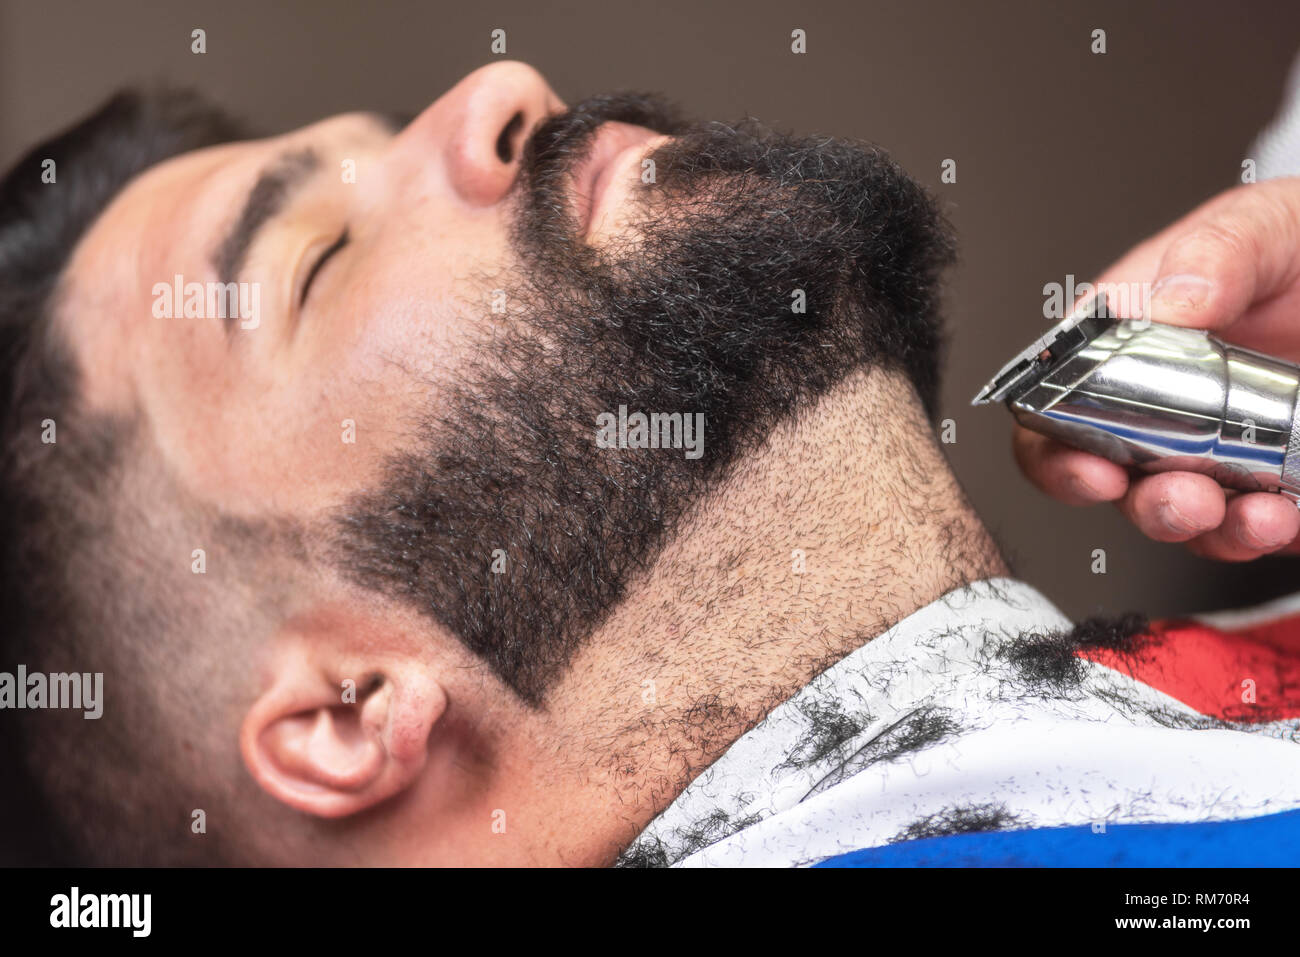 Friseur Rasieren Der Bart Von Einem Stattlichen Bartiger Mann Mit Einem Elektrischen Rasierer An Der Friseur Stockfotografie Alamy